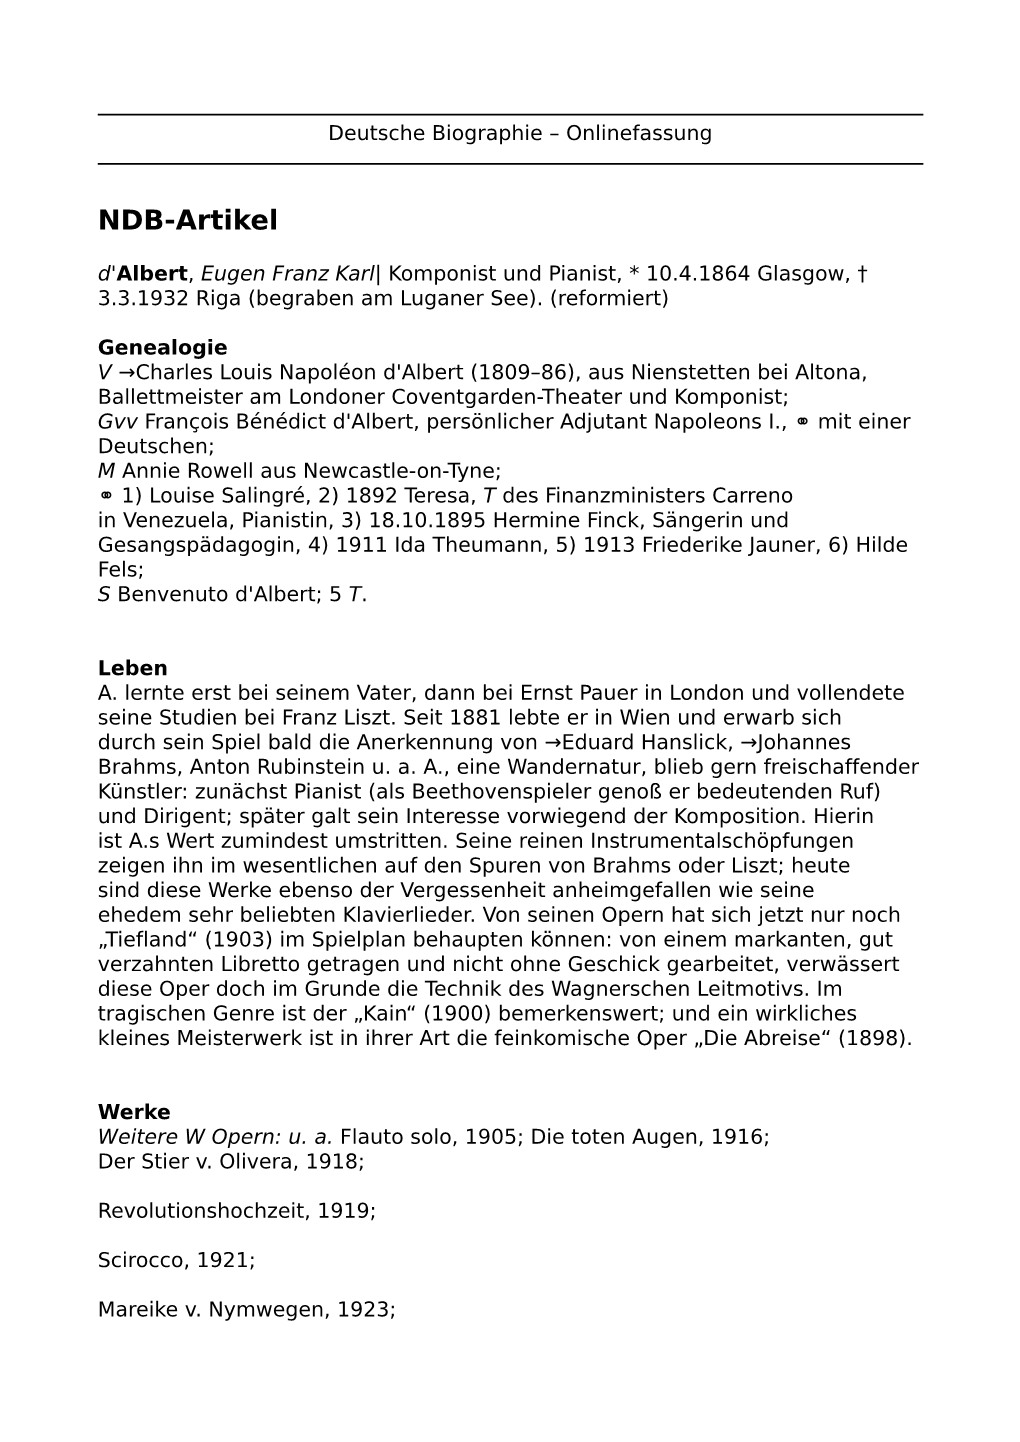 NDB-Artikel D'albert, Eugen Franz Karl| Komponist Und Pianist, * 10.4.1864 Glasgow, † 3.3.1932 Riga (Begraben Am Luganer See)